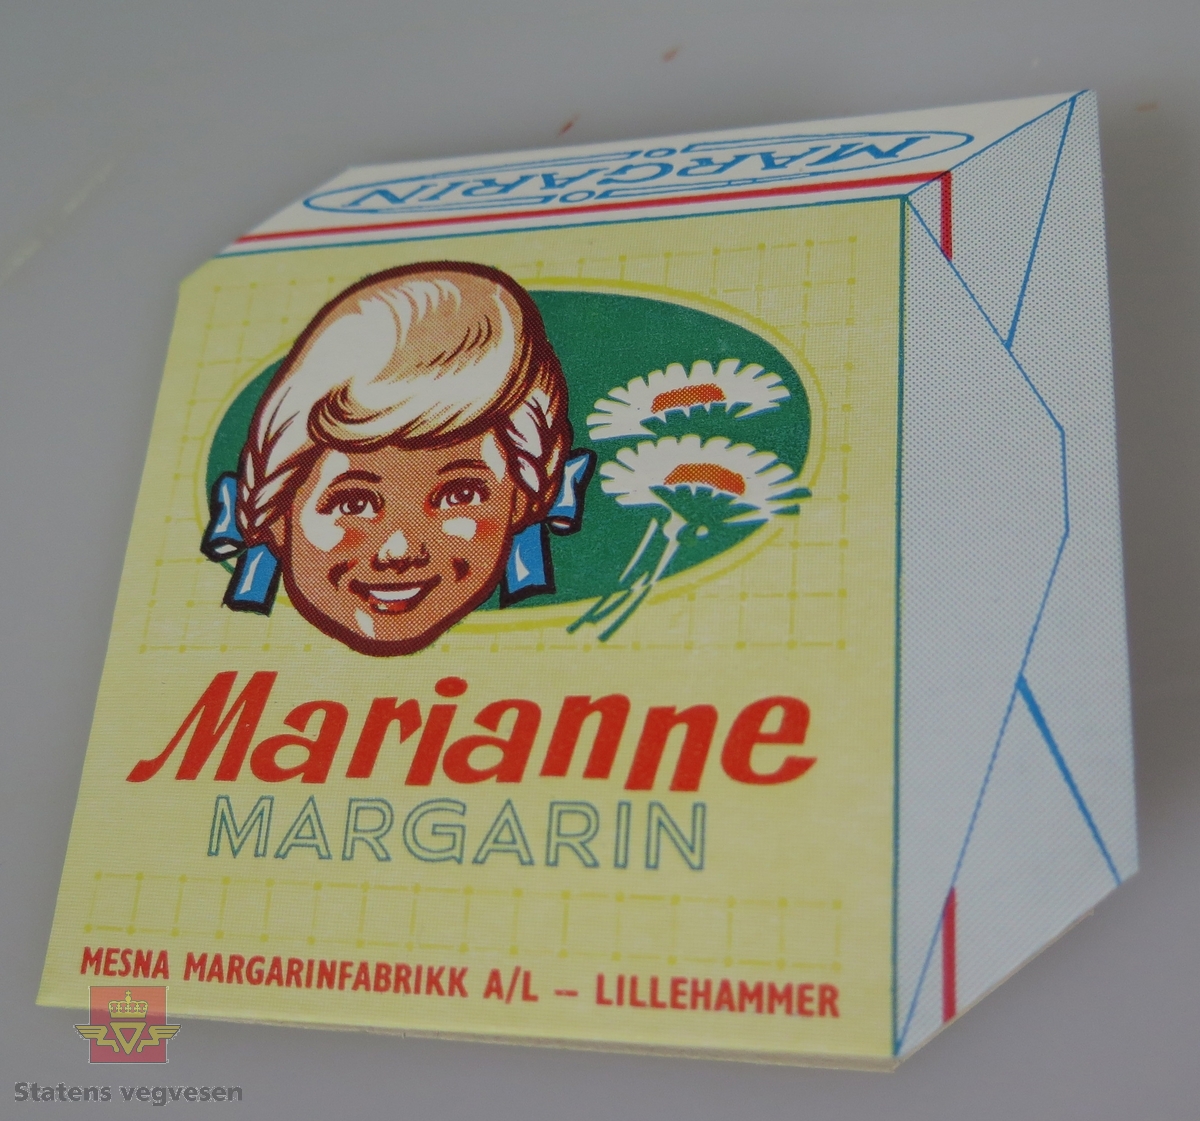 7 synåler og en nåletreder. Alt er festet til et brett av papp. Emballasjen (brettet) har reklame for Marianne Margarin fra Mesna Margarinfabrikk.